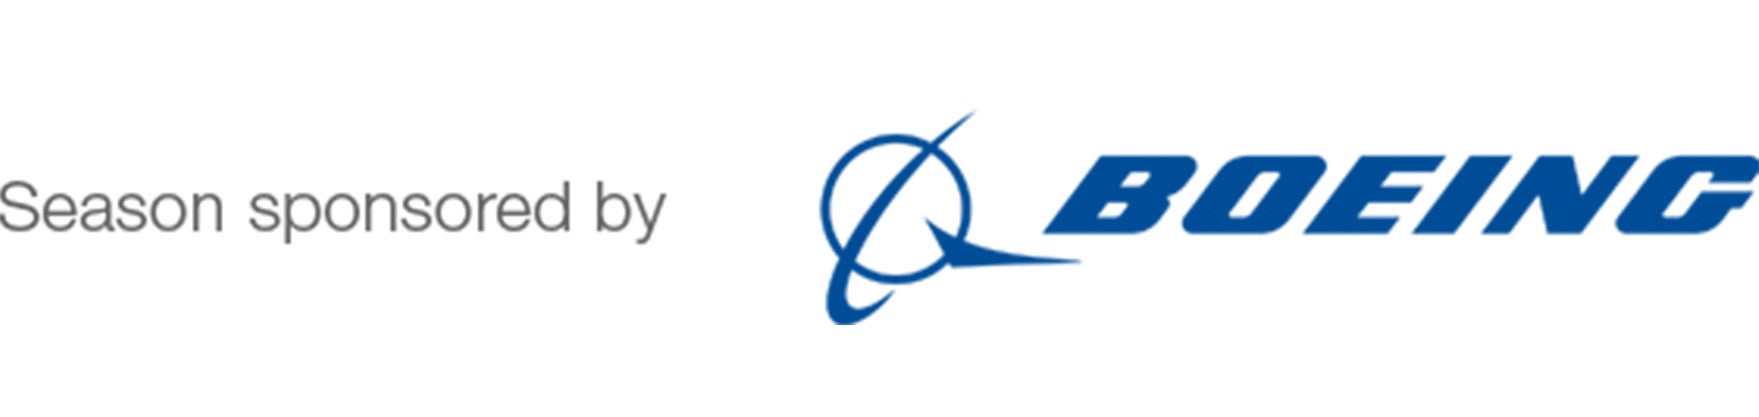 Boeing locked logo - white bg.jpg